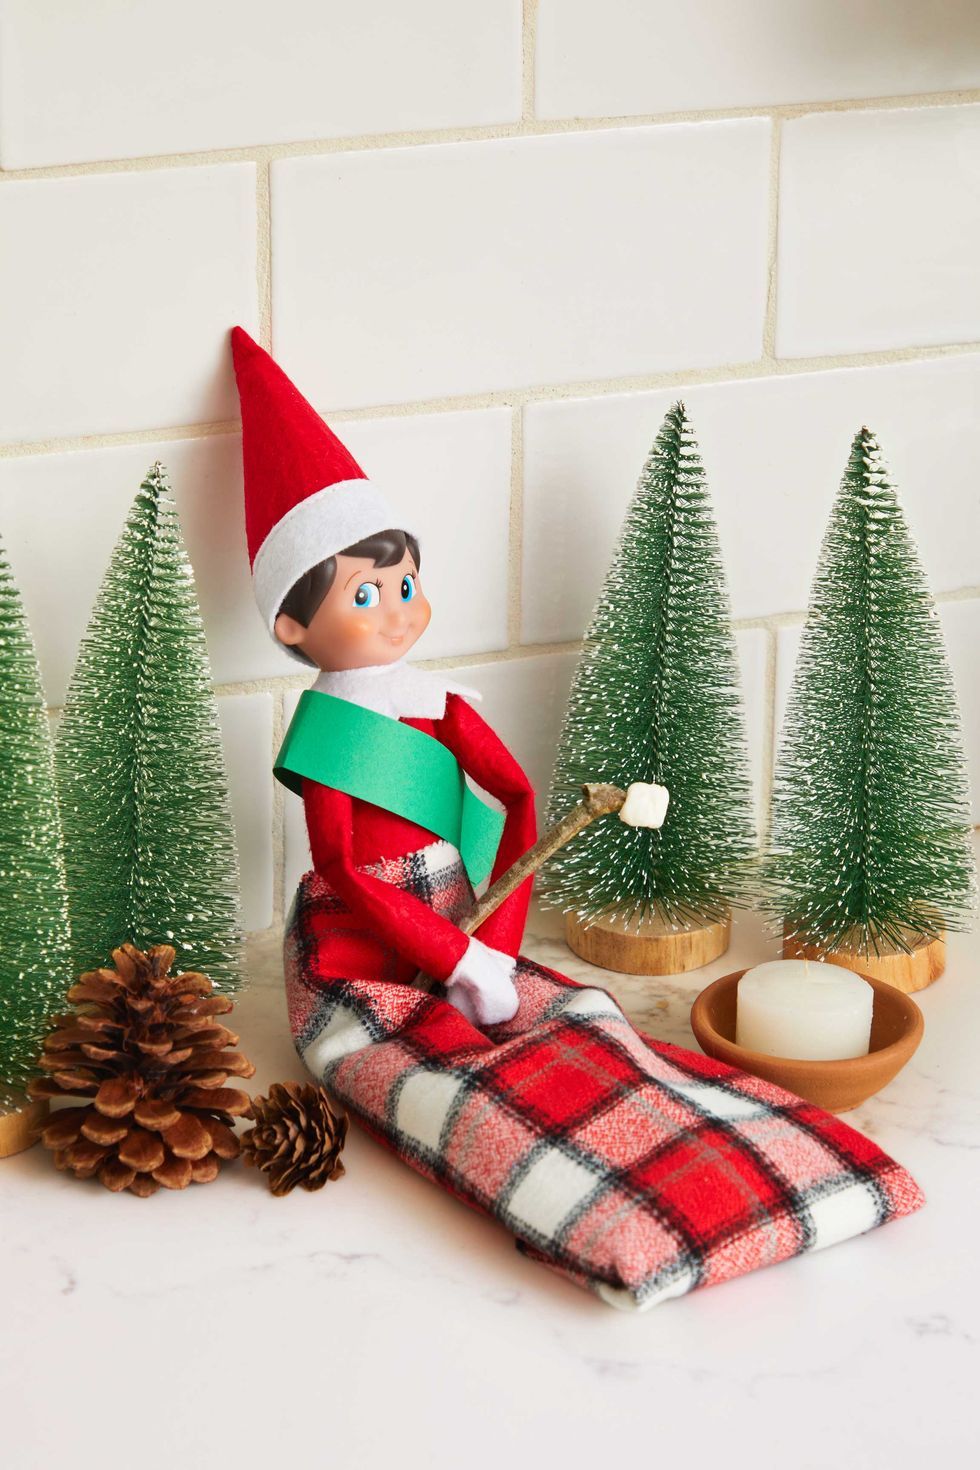 elf on the shelf doll in a plaid sleeping bag